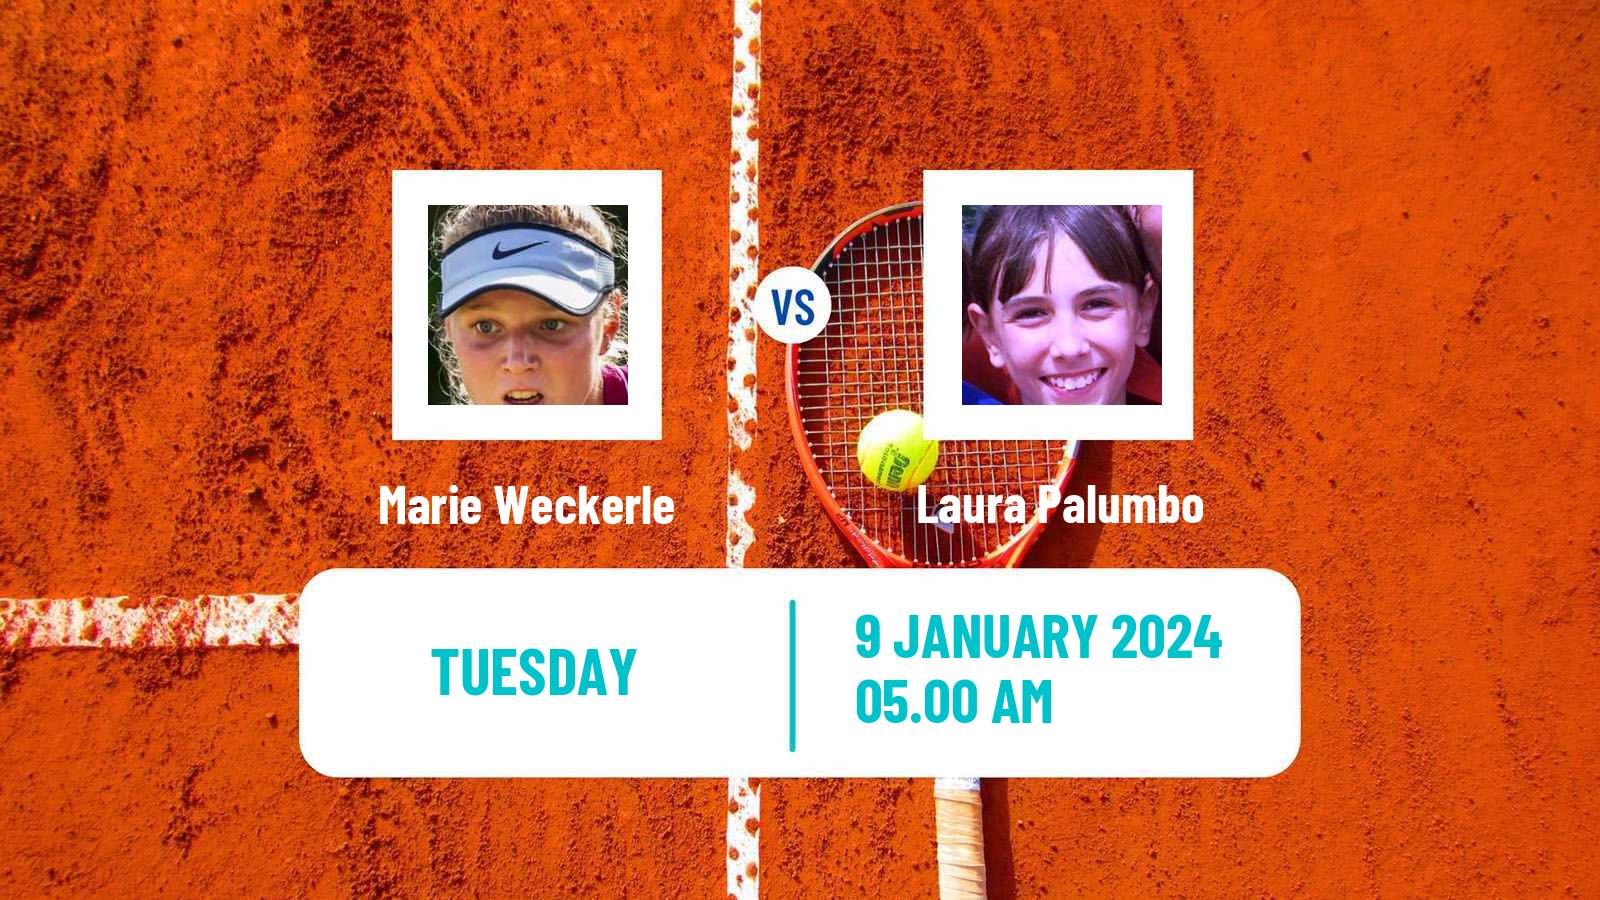 Tennis ITF W15 Esch Alzette Women Marie Weckerle - Laura Palumbo